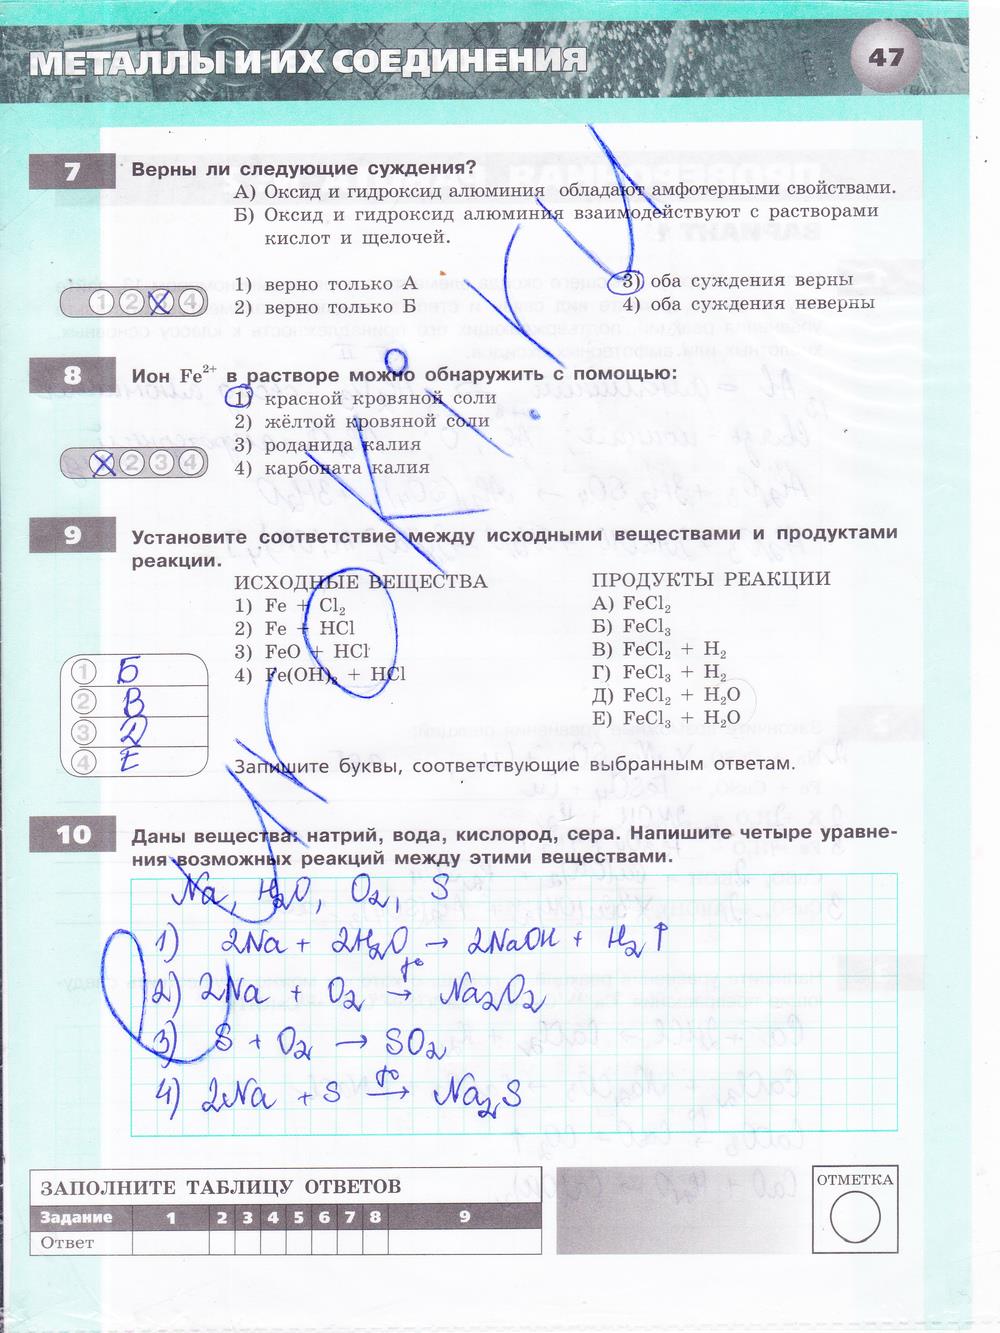 гдз 9 класс тетрадь-экзаменатор страница 47 химия Бобылева, Бирюлина